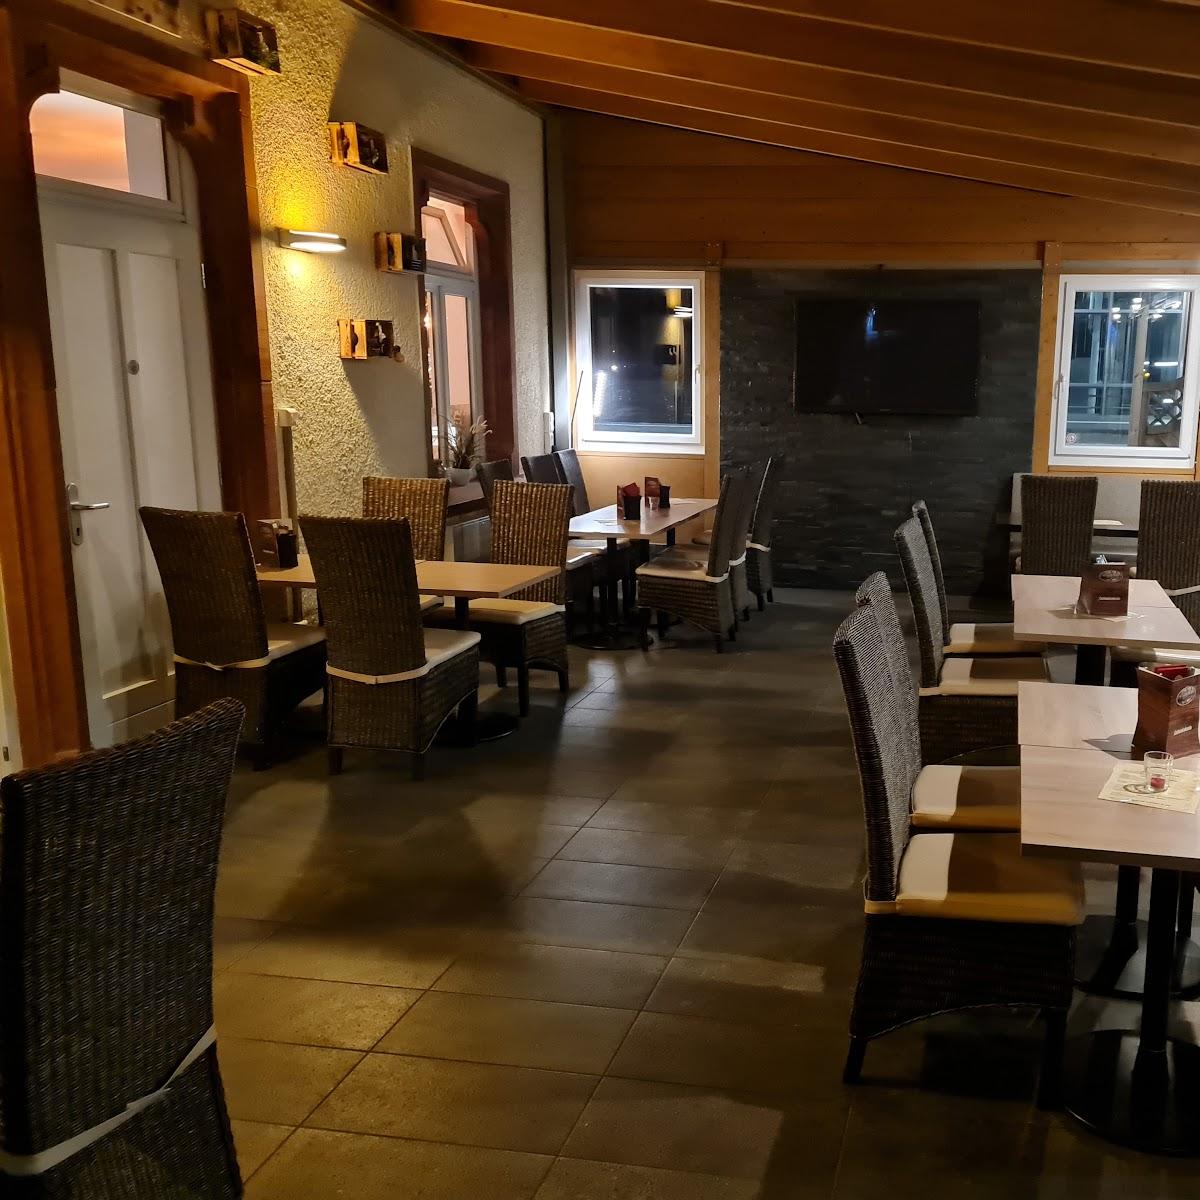 Restaurant "LOK8 | Coffee, Kitchen & Bar" in Gottenheim